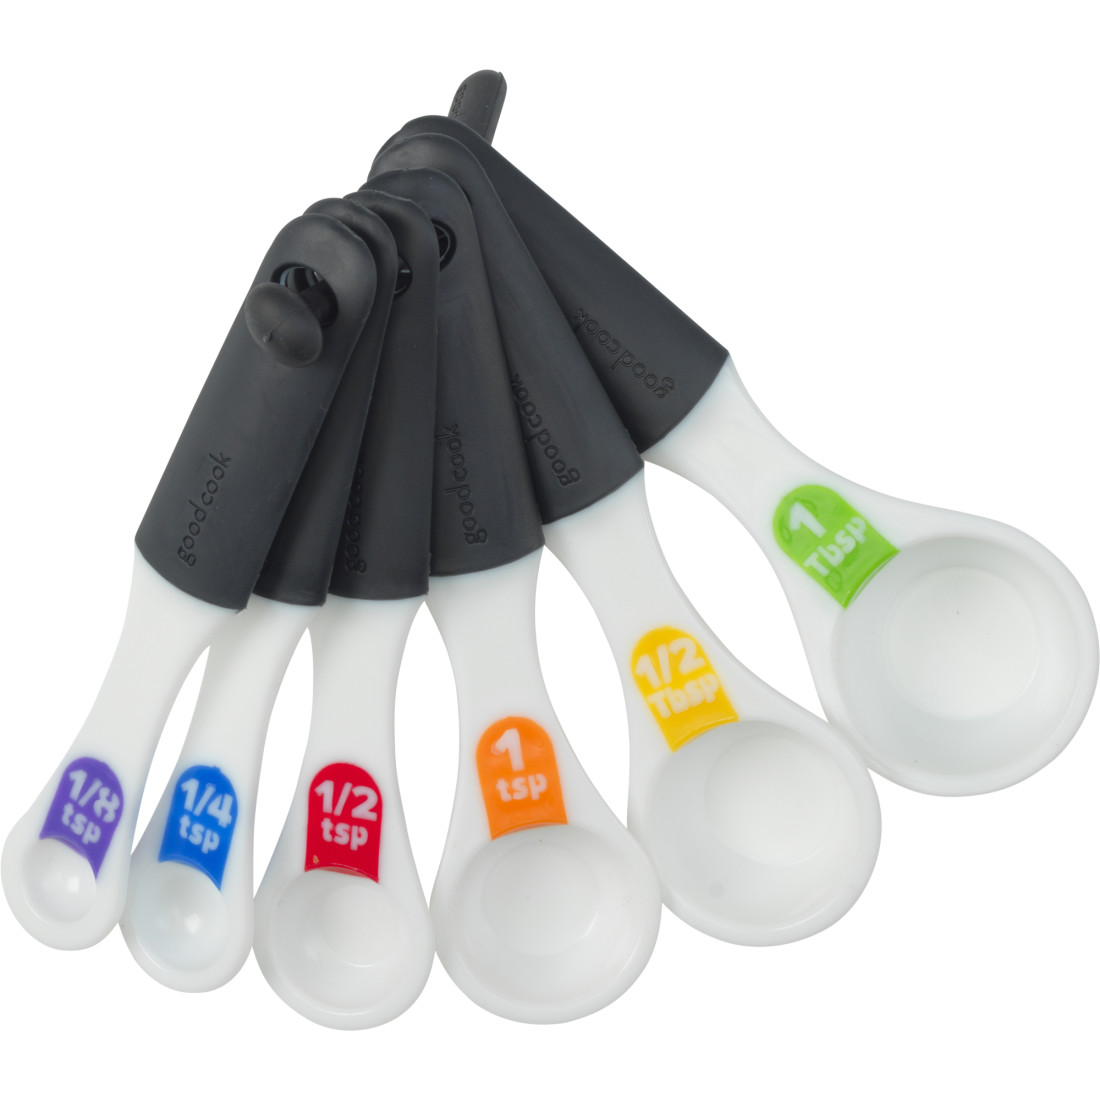 Fibre Glast teaspoon/ Tablespoon Measuring Set